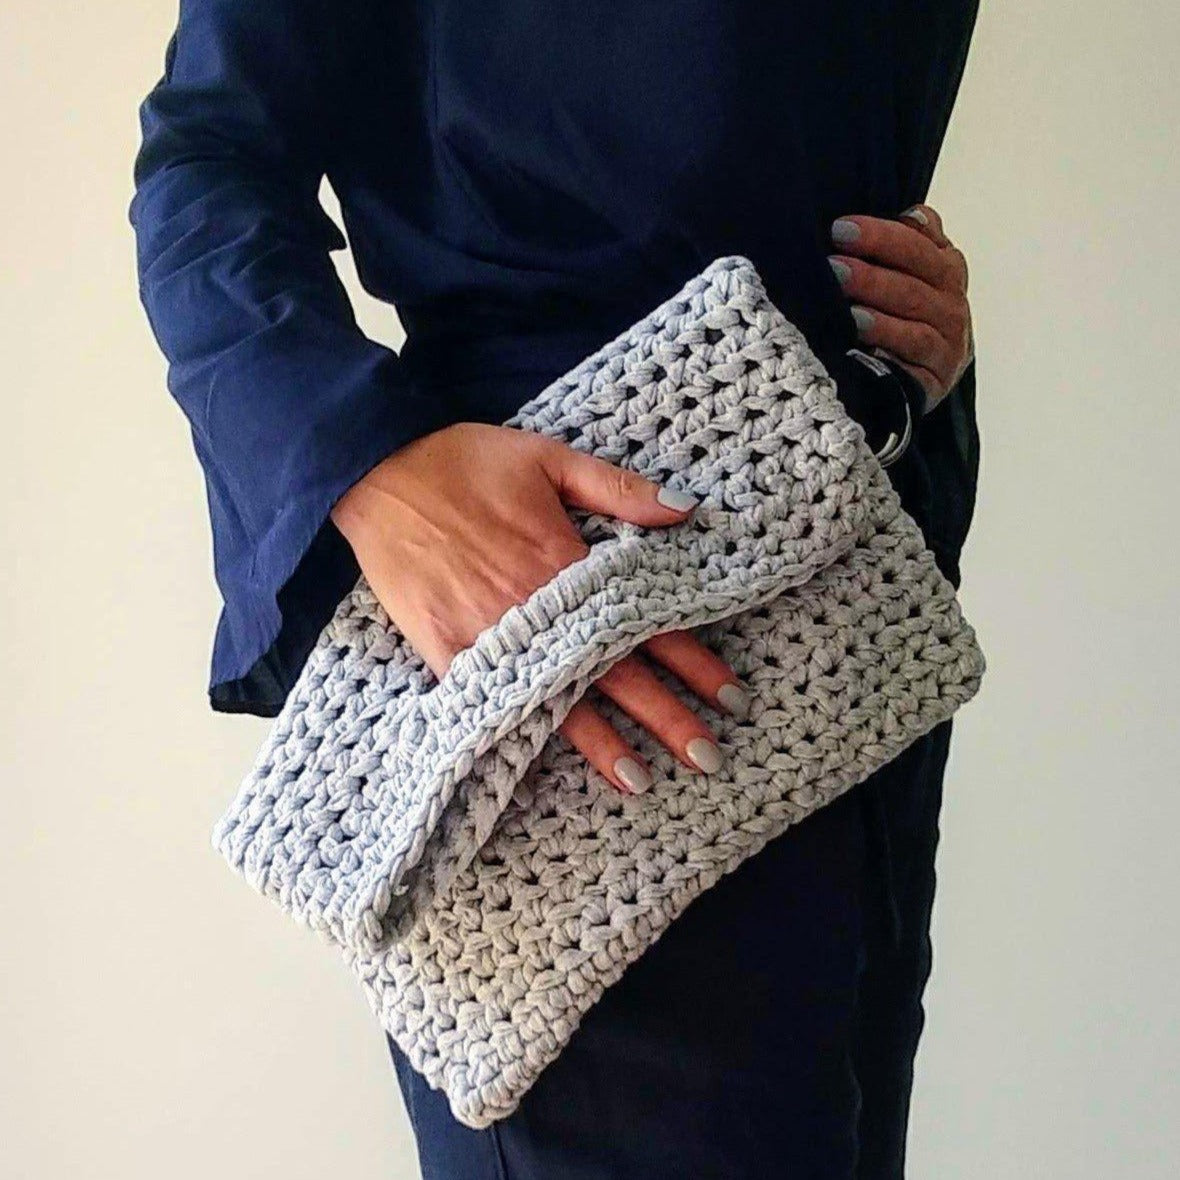 Crochet Bag Pattern Crochet Purse Pattern Crochet -  Singapore   Crochet handbags patterns, Crochet shoulder bags, Crochet purse patterns